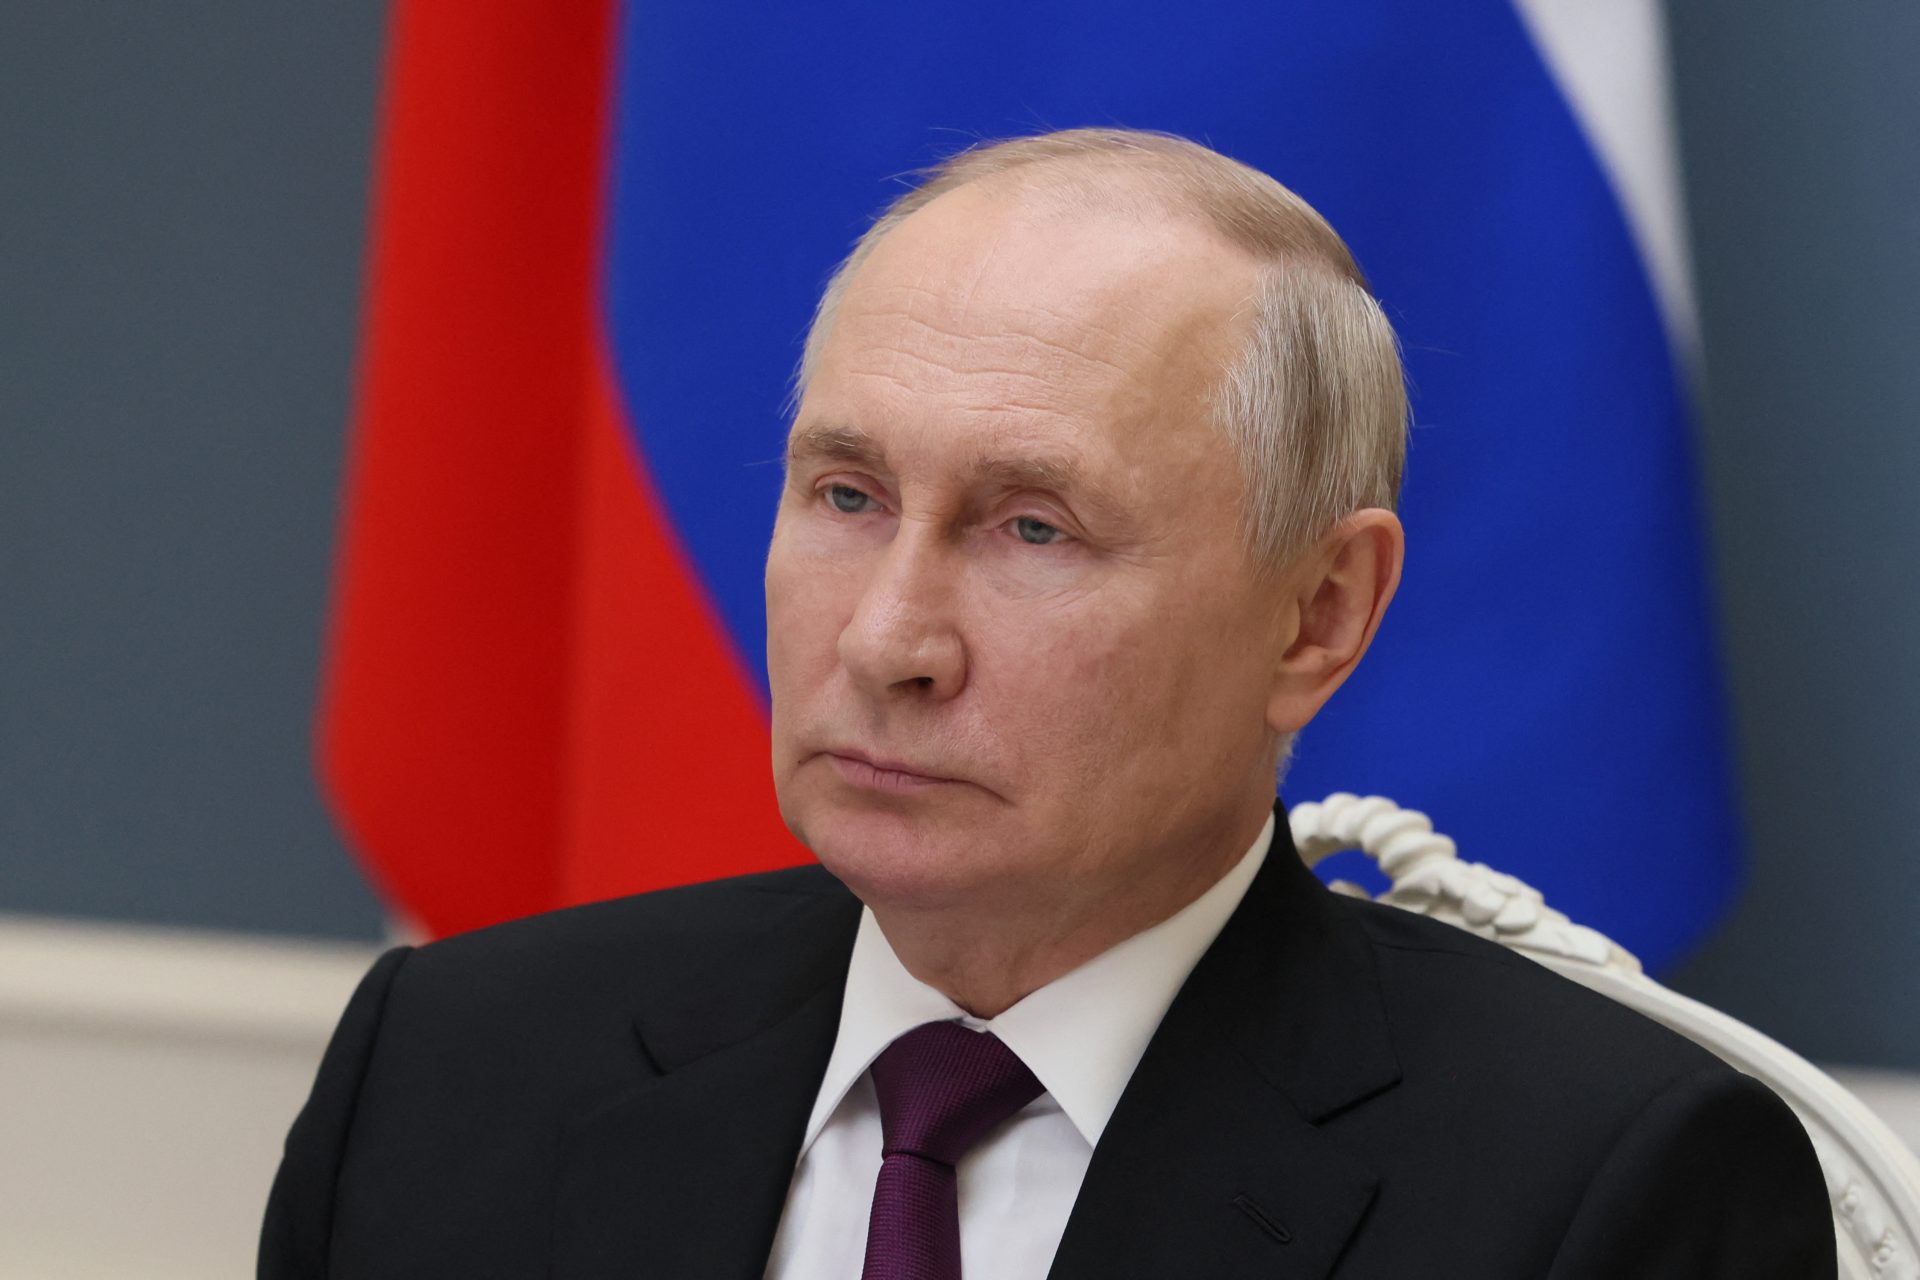 Bluft de Russische president of moeten we ons zorgen maken?